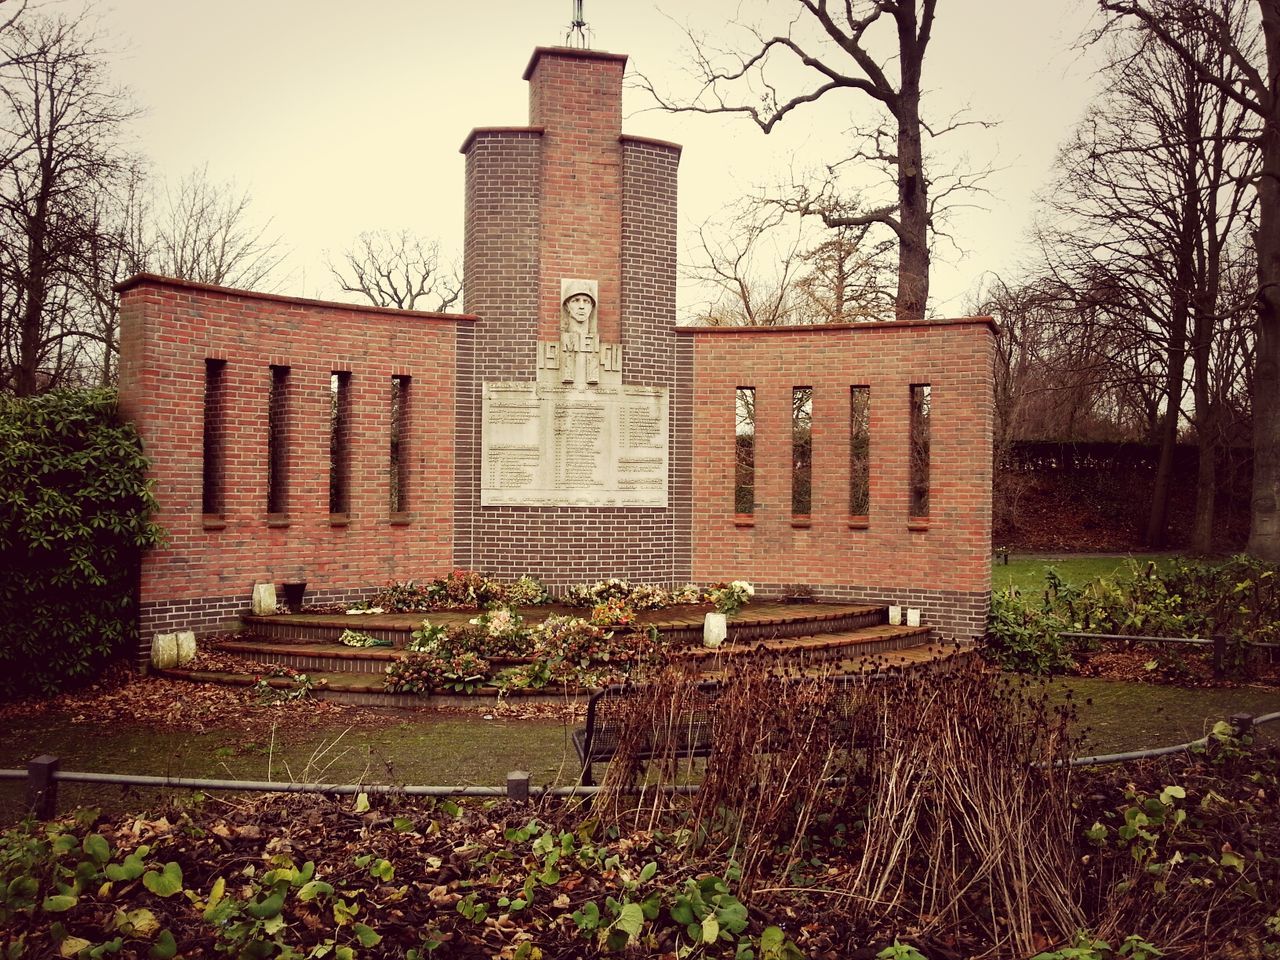 View of memorial in park